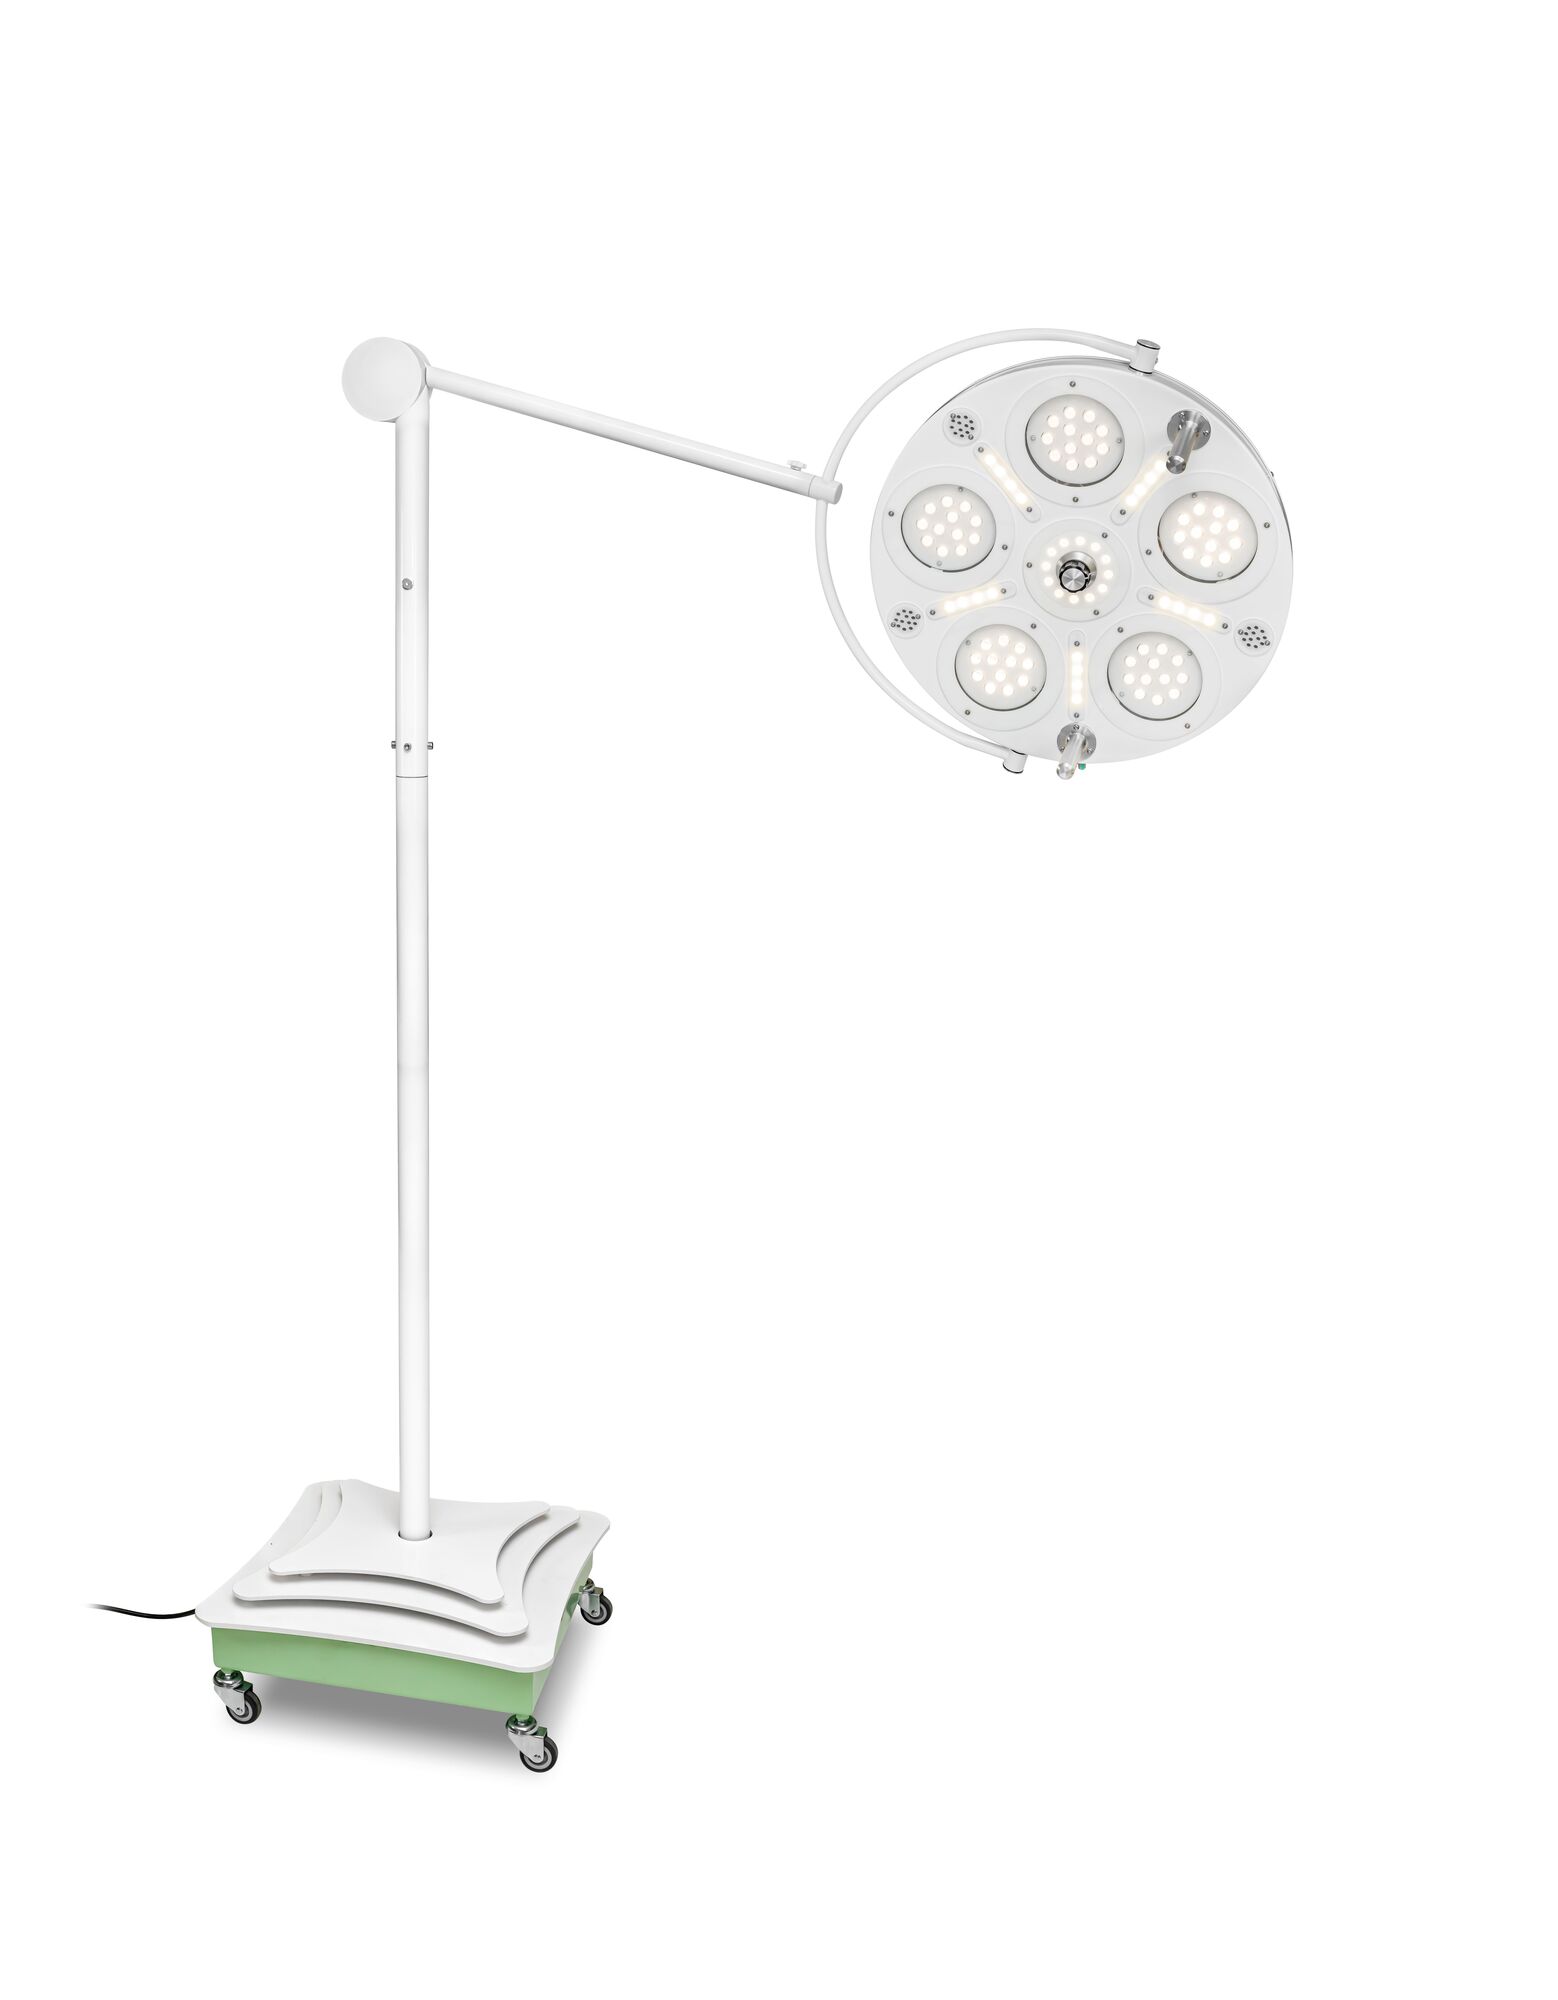 Передвижной хирургический медицинский светильник FotonFLY 6SG-A с ИБП